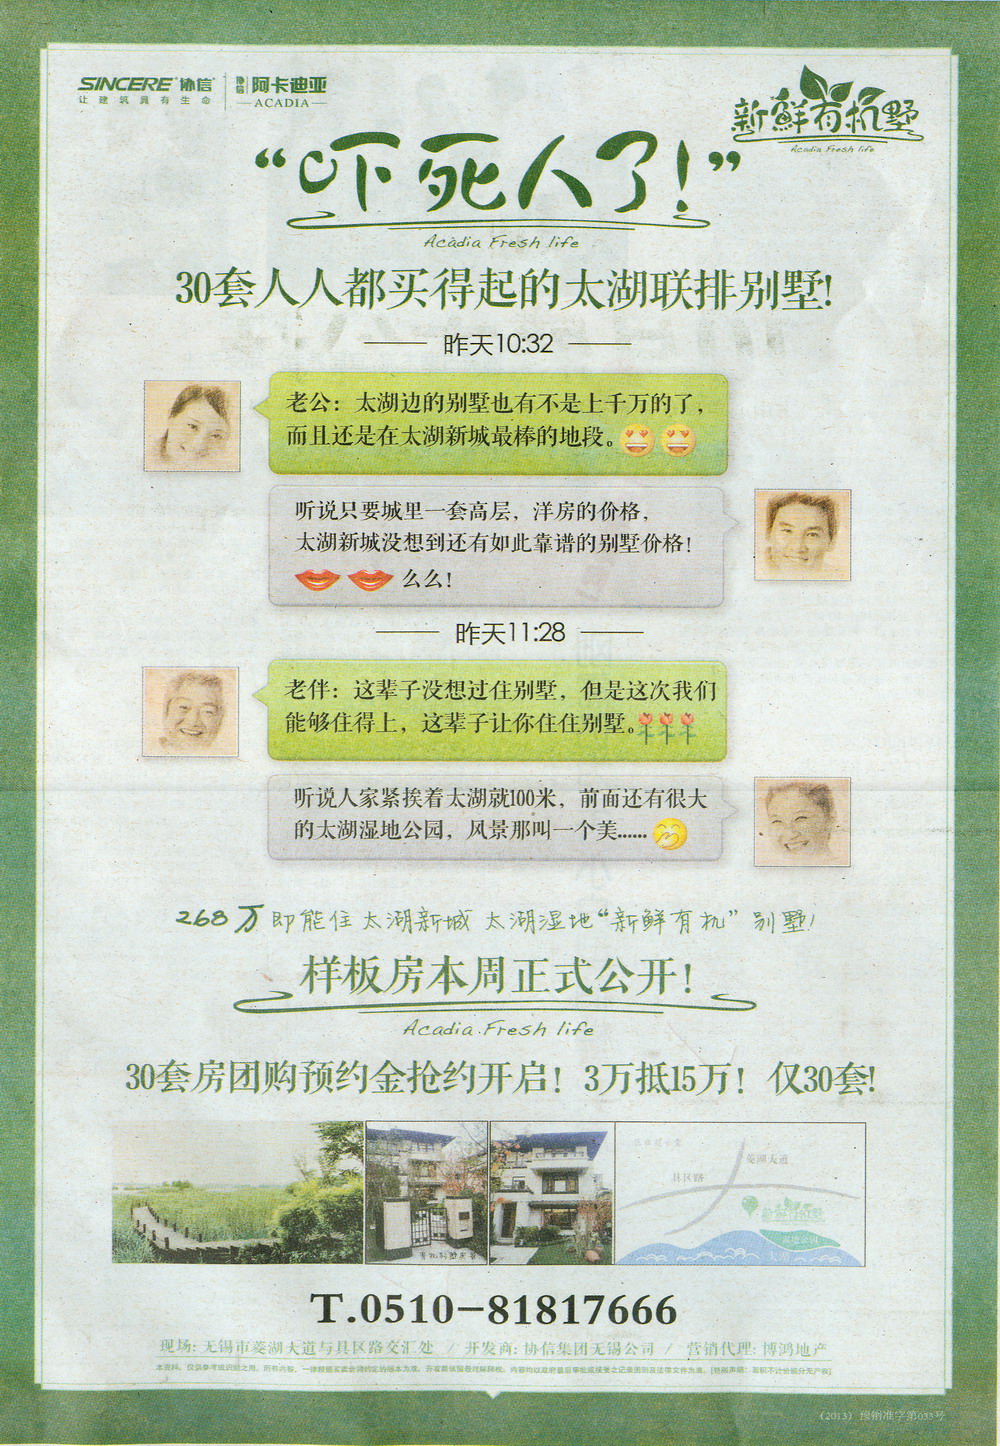 报纸广告 2013-10-17 江南晚报 B29   